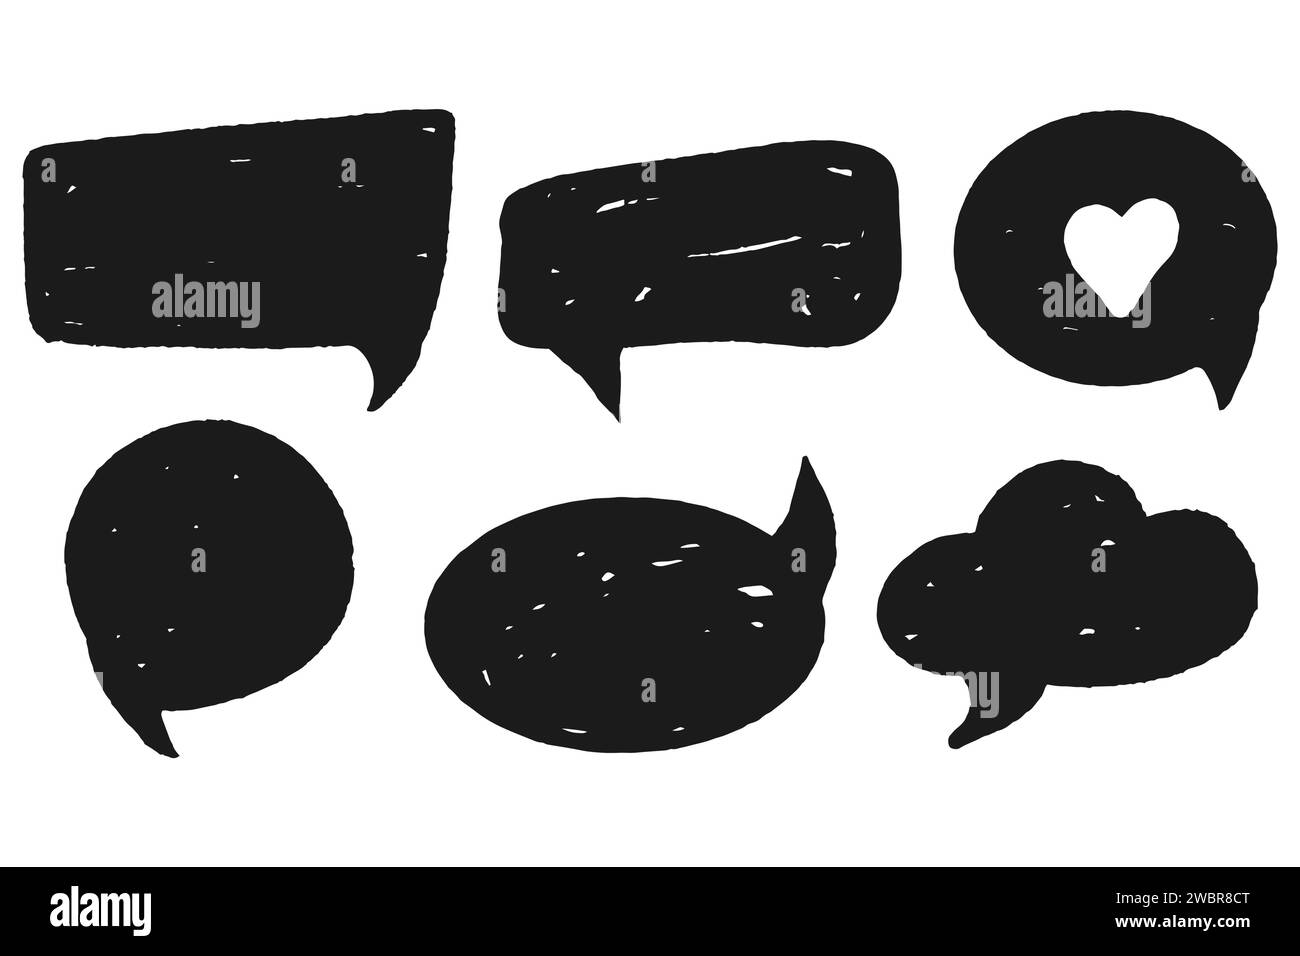 Setzen Sie Comic-Sprechblase Grunge-Kritzelwolke im Cartoon-Stil isoliert auf weißem Hintergrund. Gedanken, Dialog Formen Kurve und Scribble. Vektorabbildung Stock Vektor